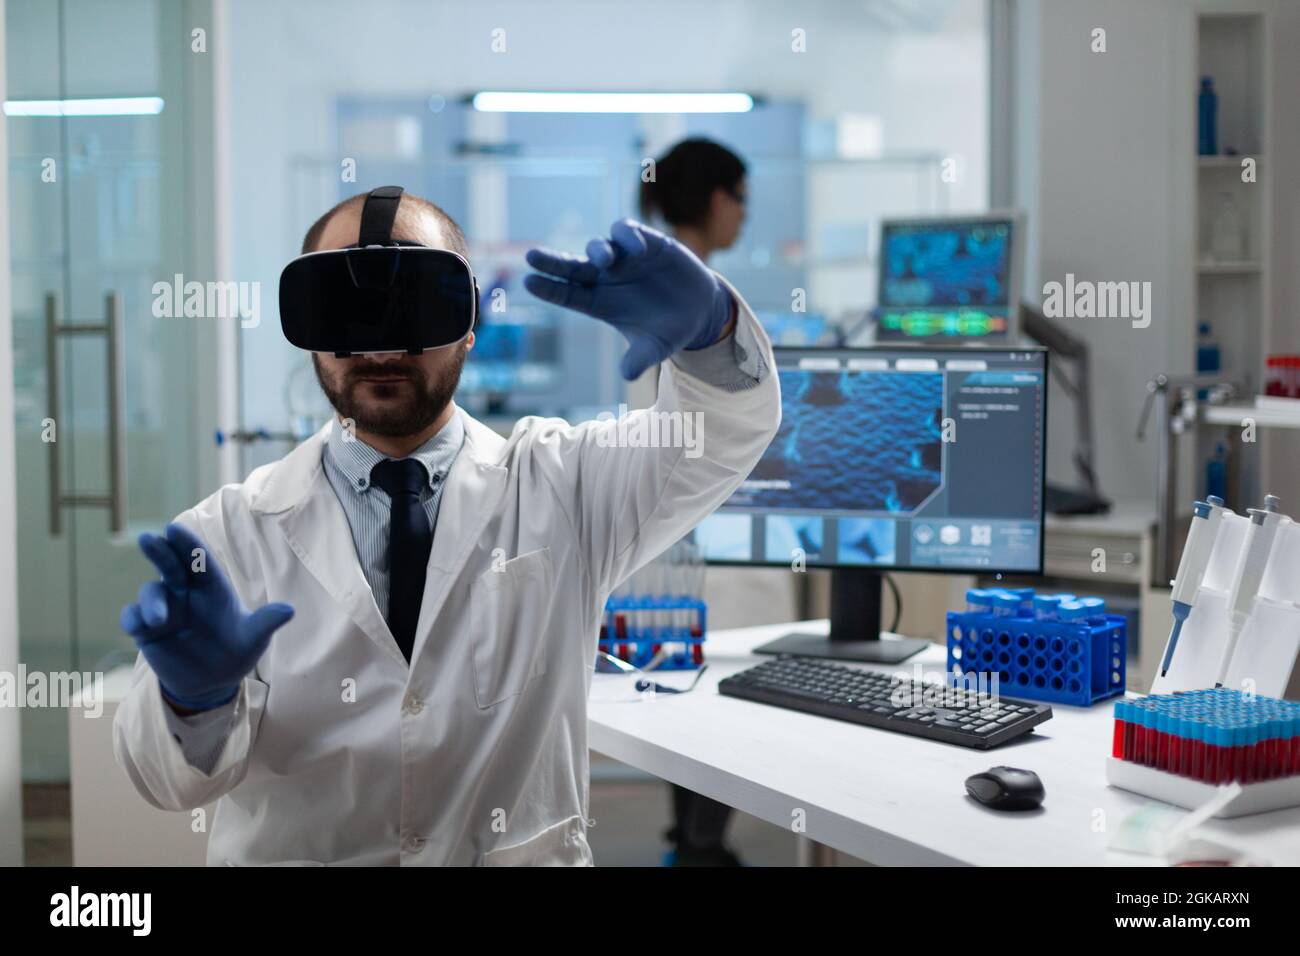 Chimiste chercheur analysant le développement de la maladie à l'aide d'un casque de réalité virtuelle pendant une expérience médicale en laboratoire hospitalier de biochimie. Équipement de biotechnologie moderne Banque D'Images